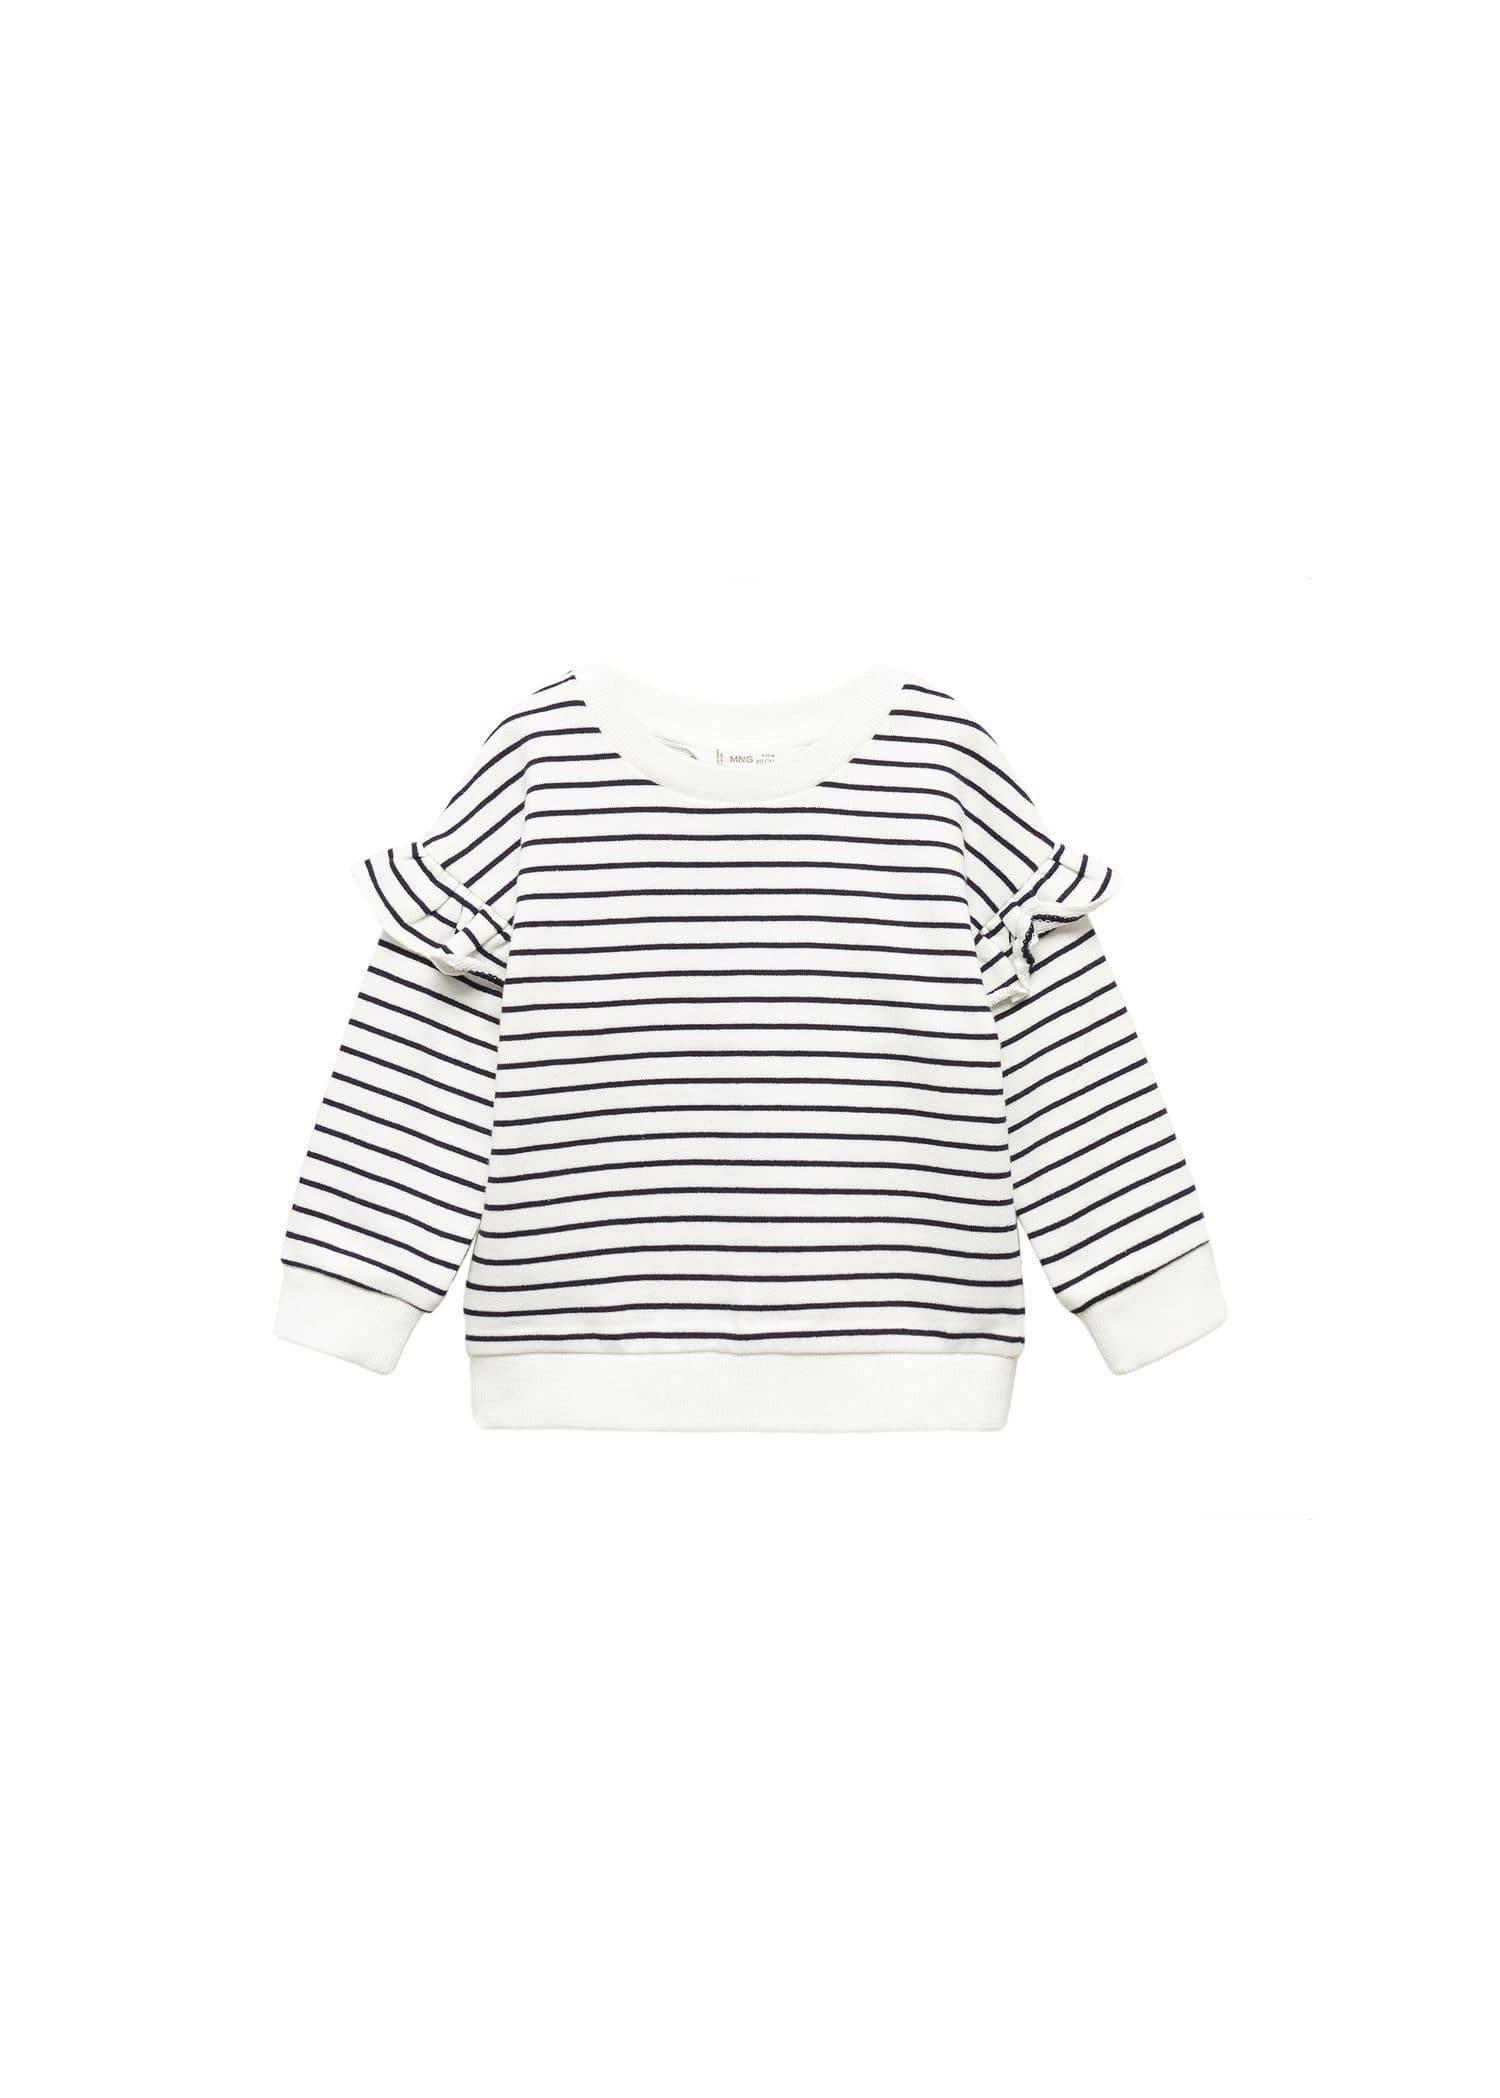 Mango - Navy Ruffled Striped Sweatshirt, Kids Girls